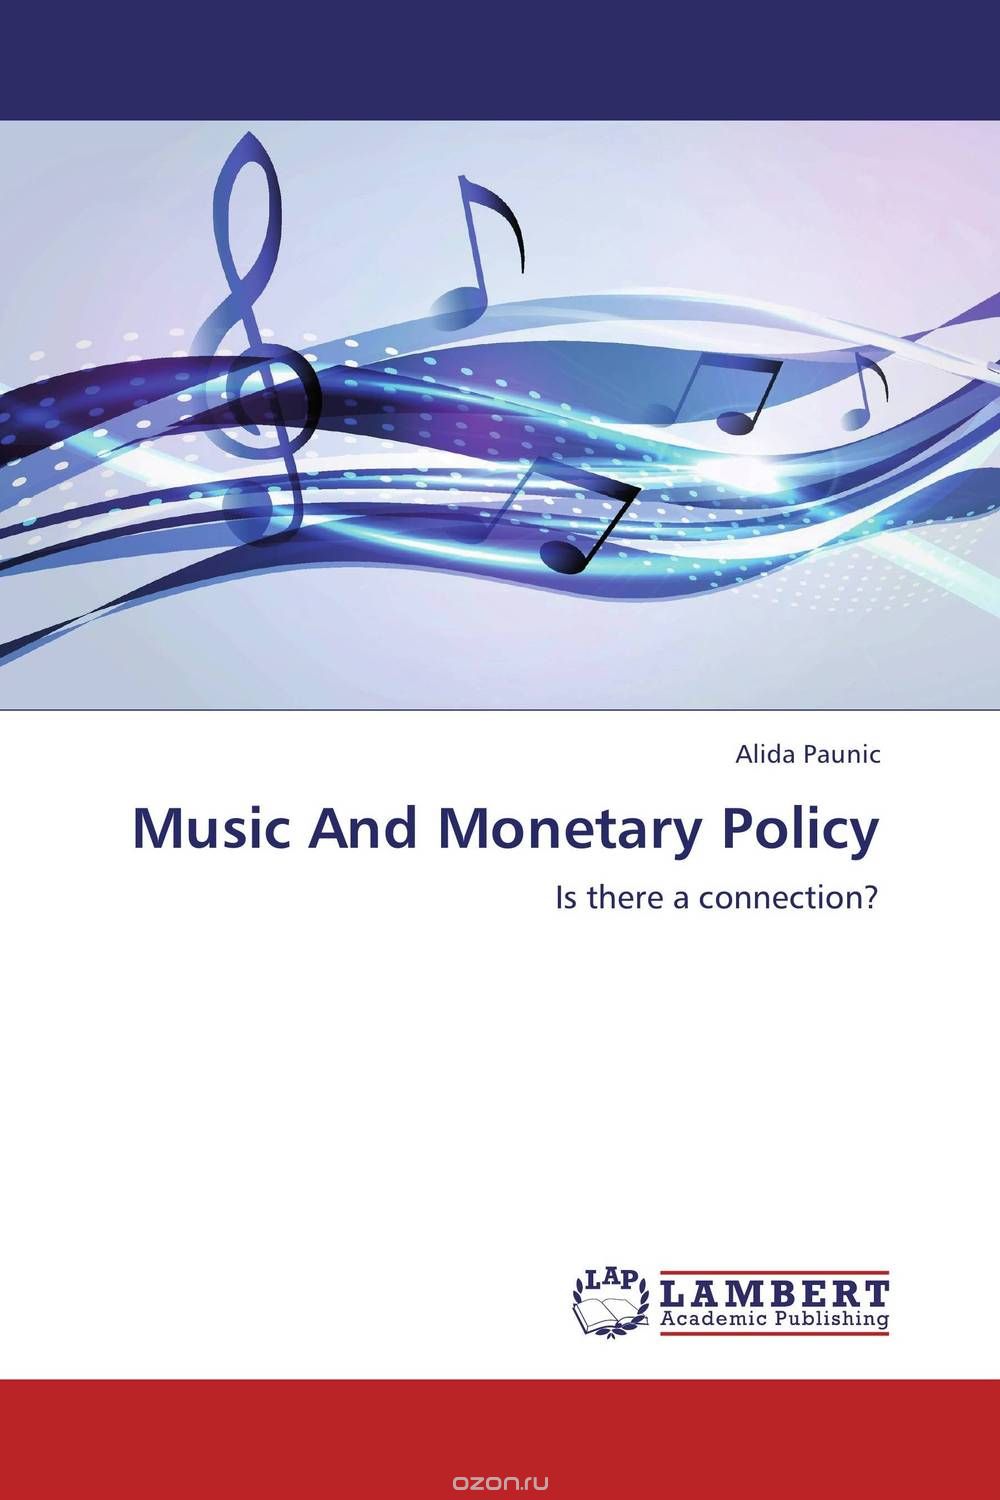 Скачать книгу "Music And Monetary Policy"